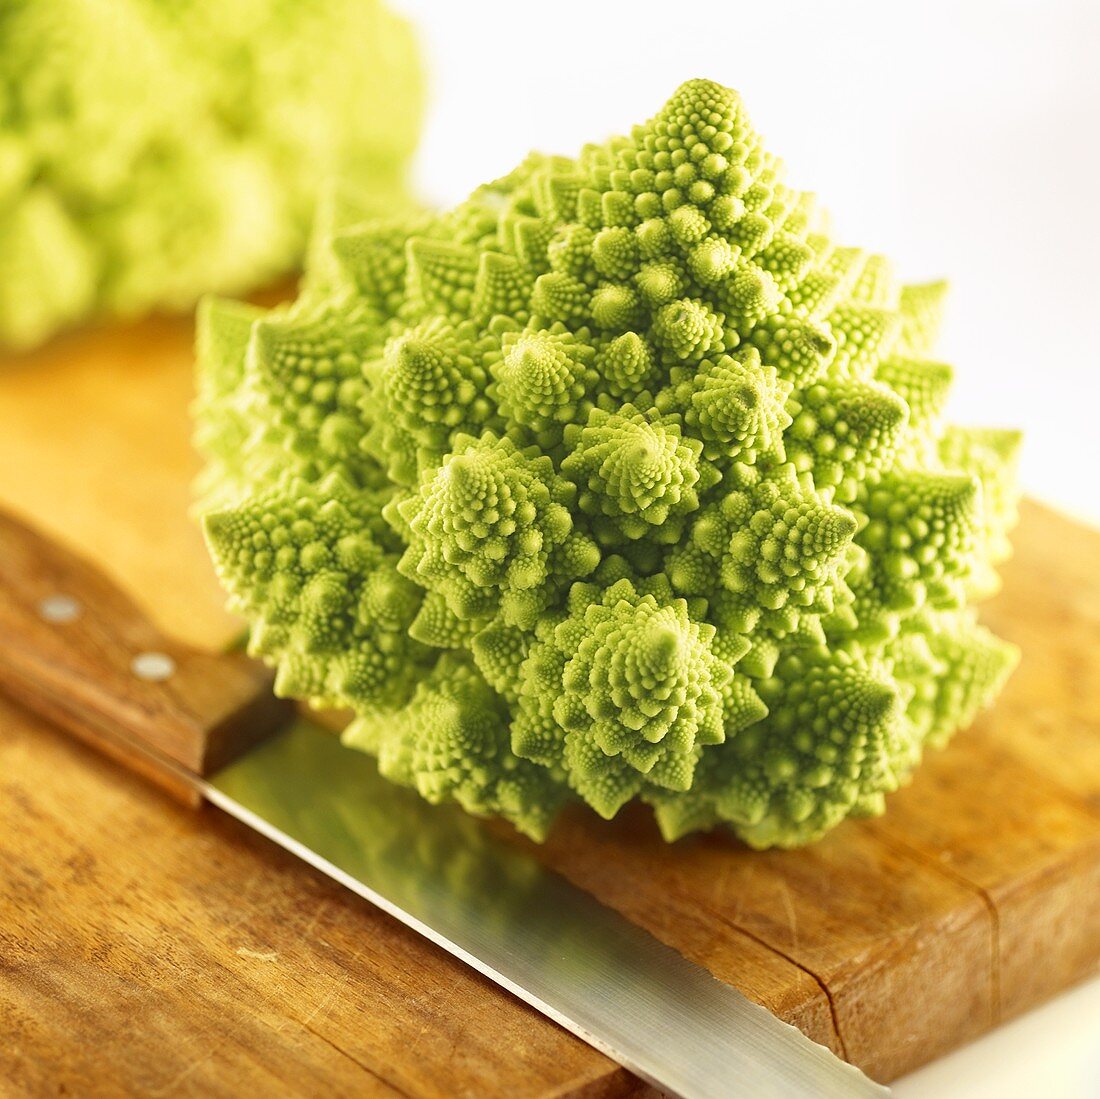 Romanesco broccoli on a wooden board